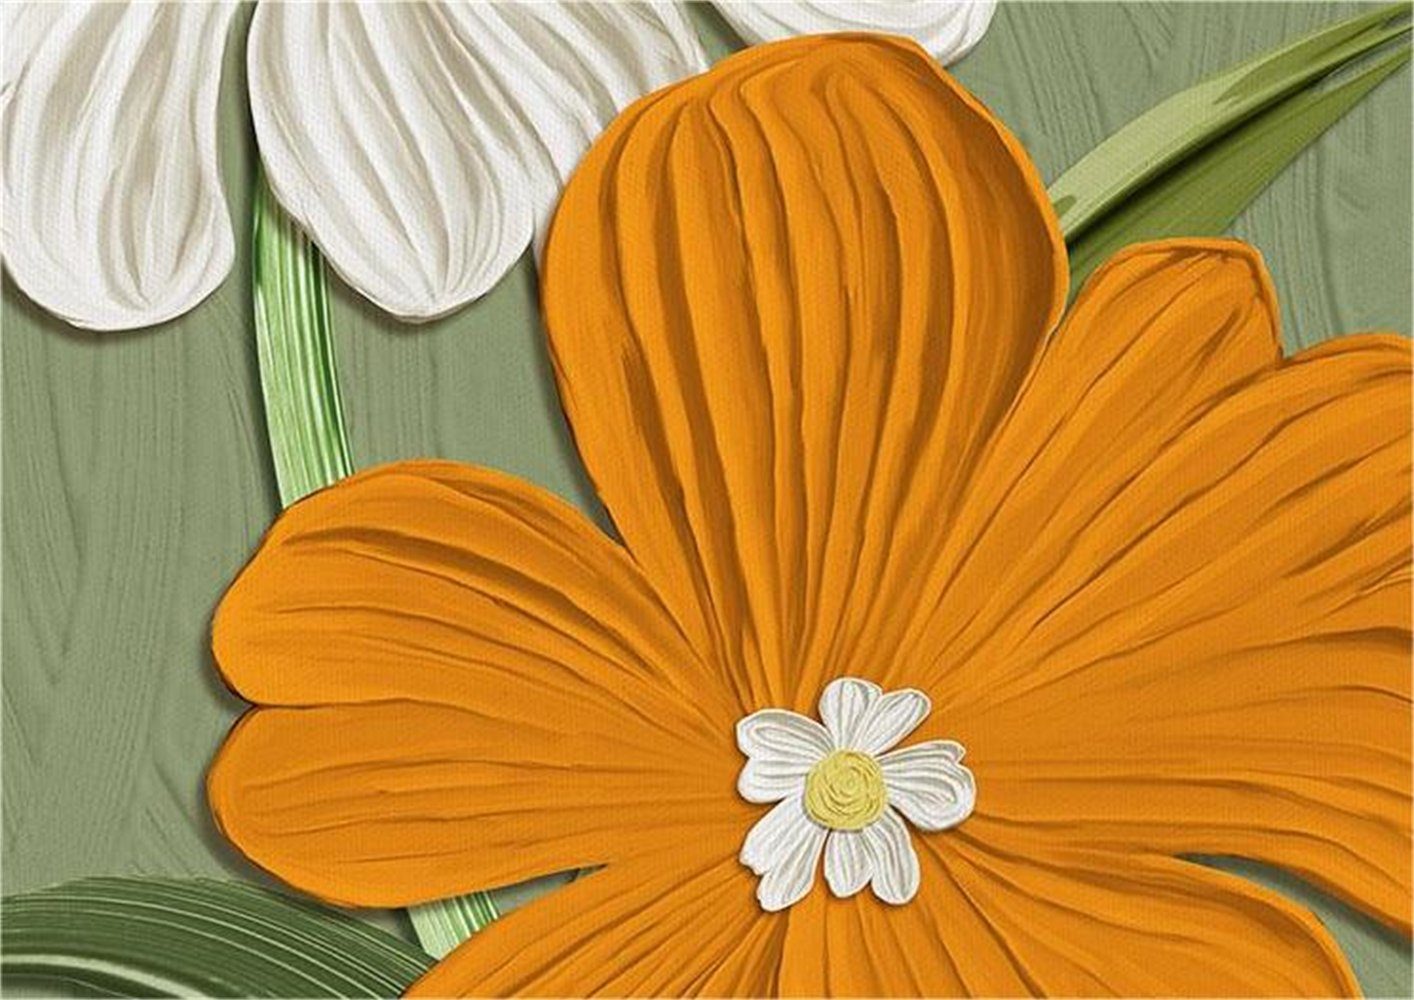 Rouemi florale Botanische weiß-A Dekorationsmalerei,Leinwandmalerei,Modern (30×40cm), Aufhängefertig Canvas, Kunstdruck